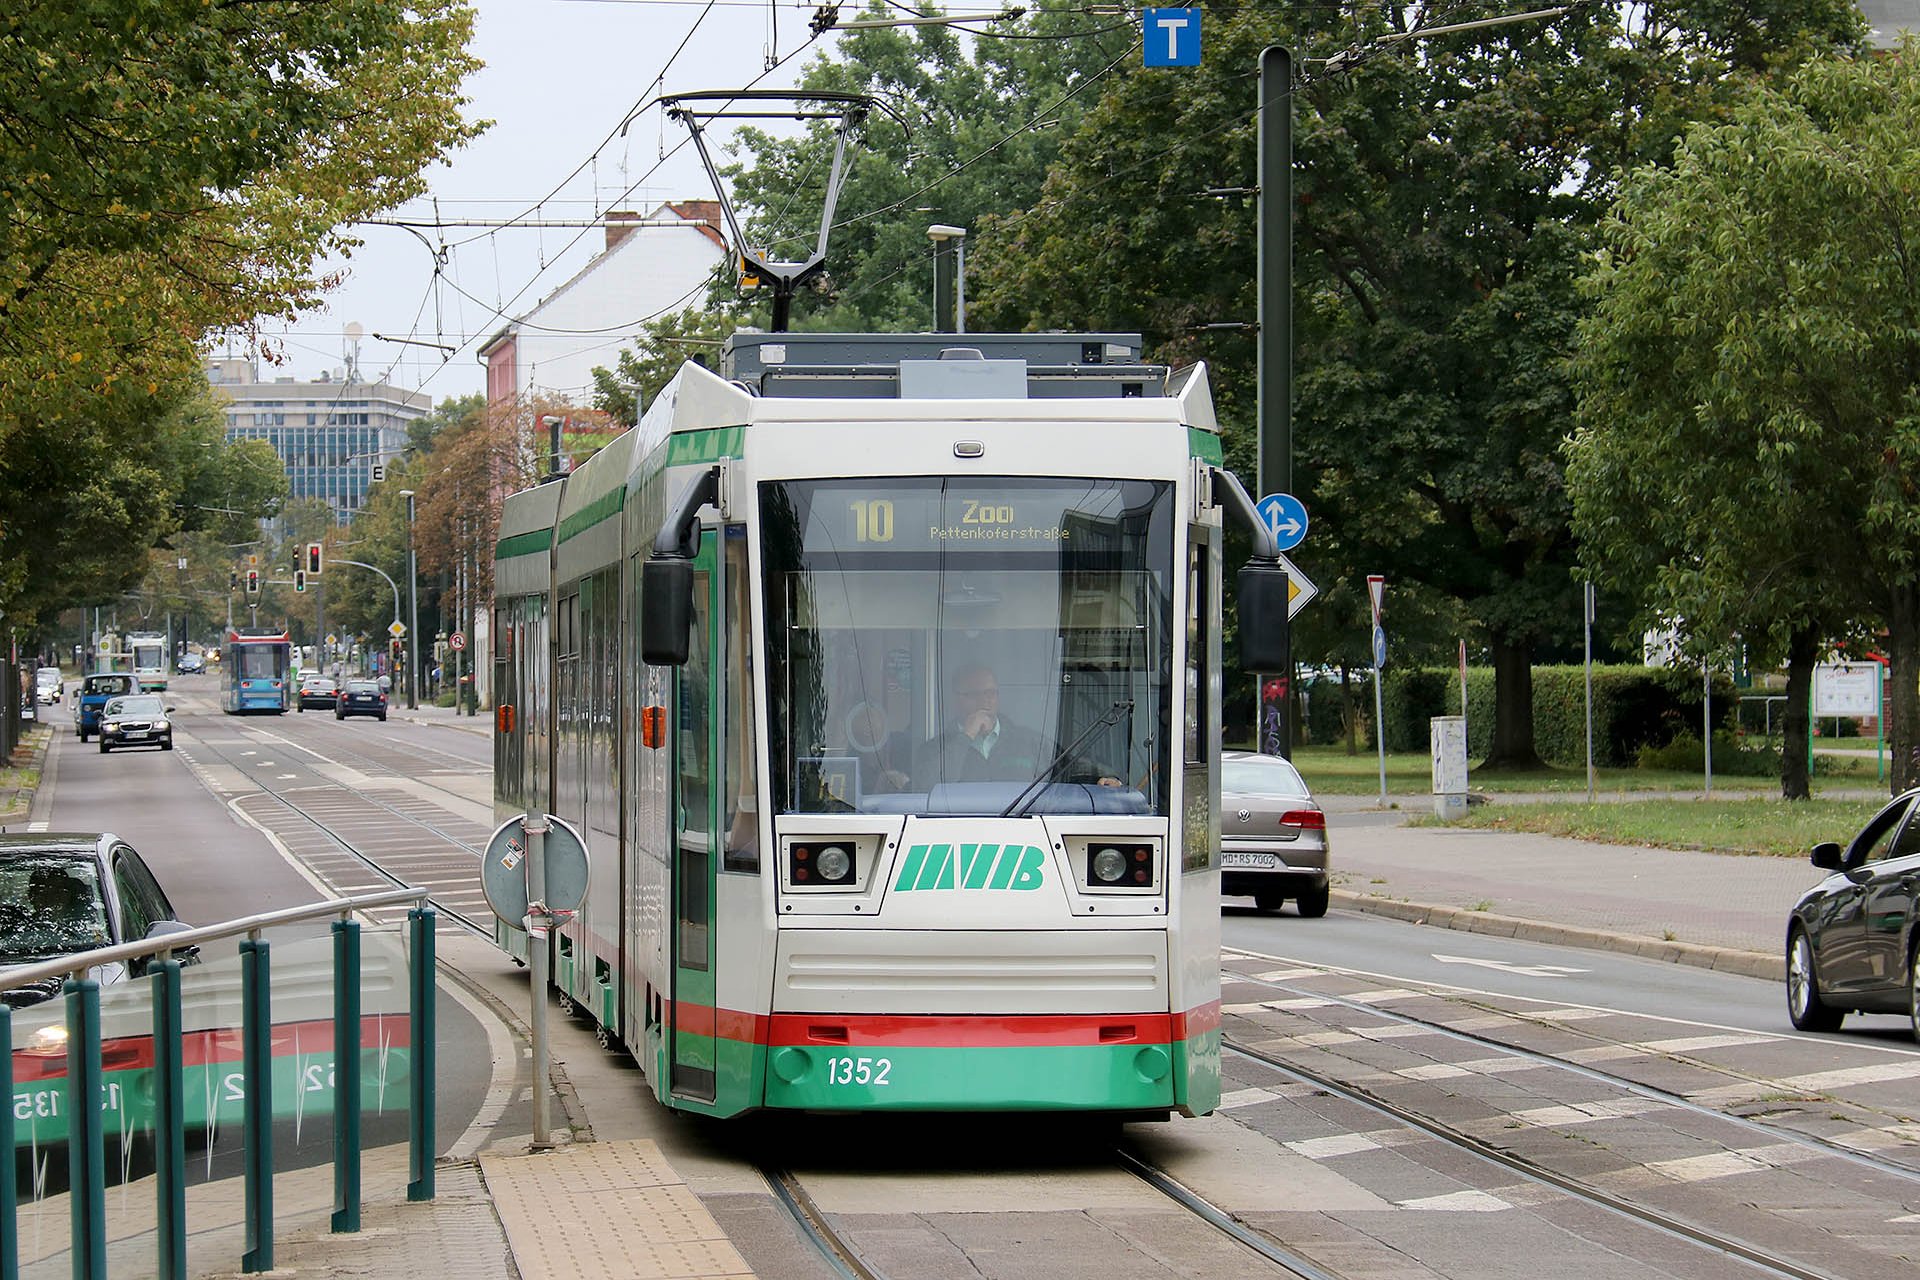 NGT8D 1352 1326–1372 baute Bombardier in Bautzen. Bombardier Bautzen built trams 1326-1372.